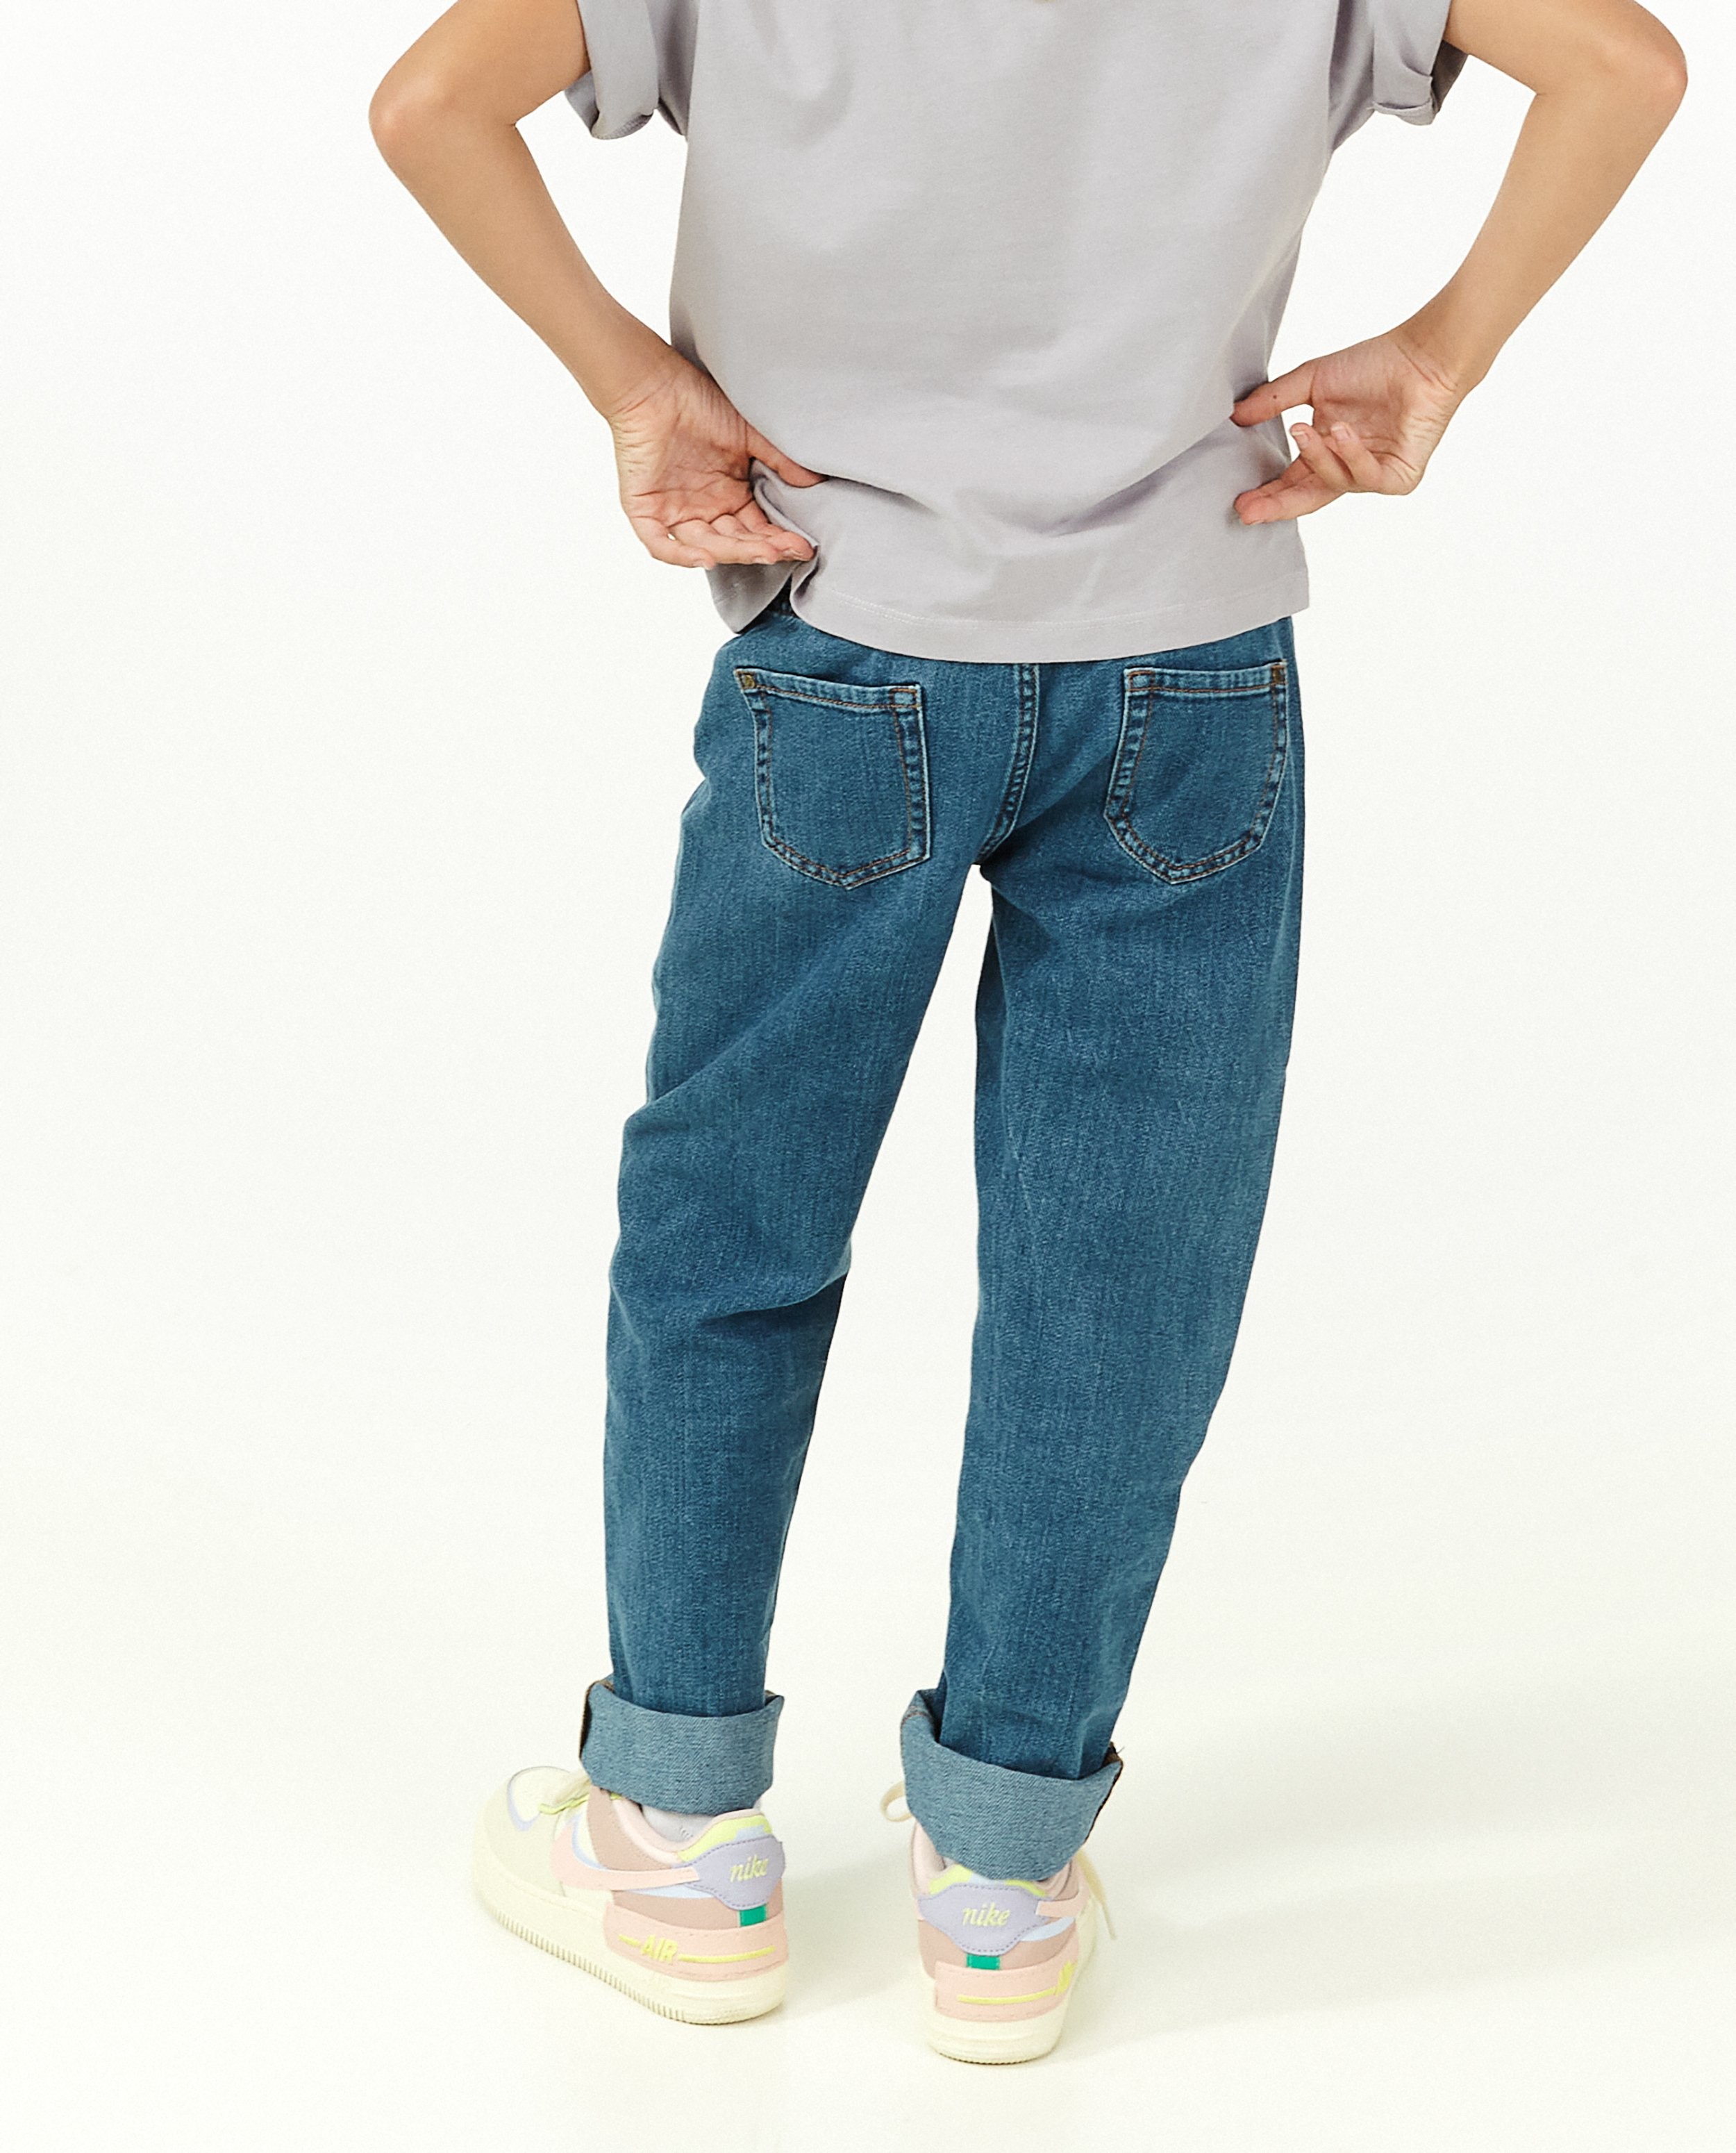 Jeans - Blauwe straight jeans Lene